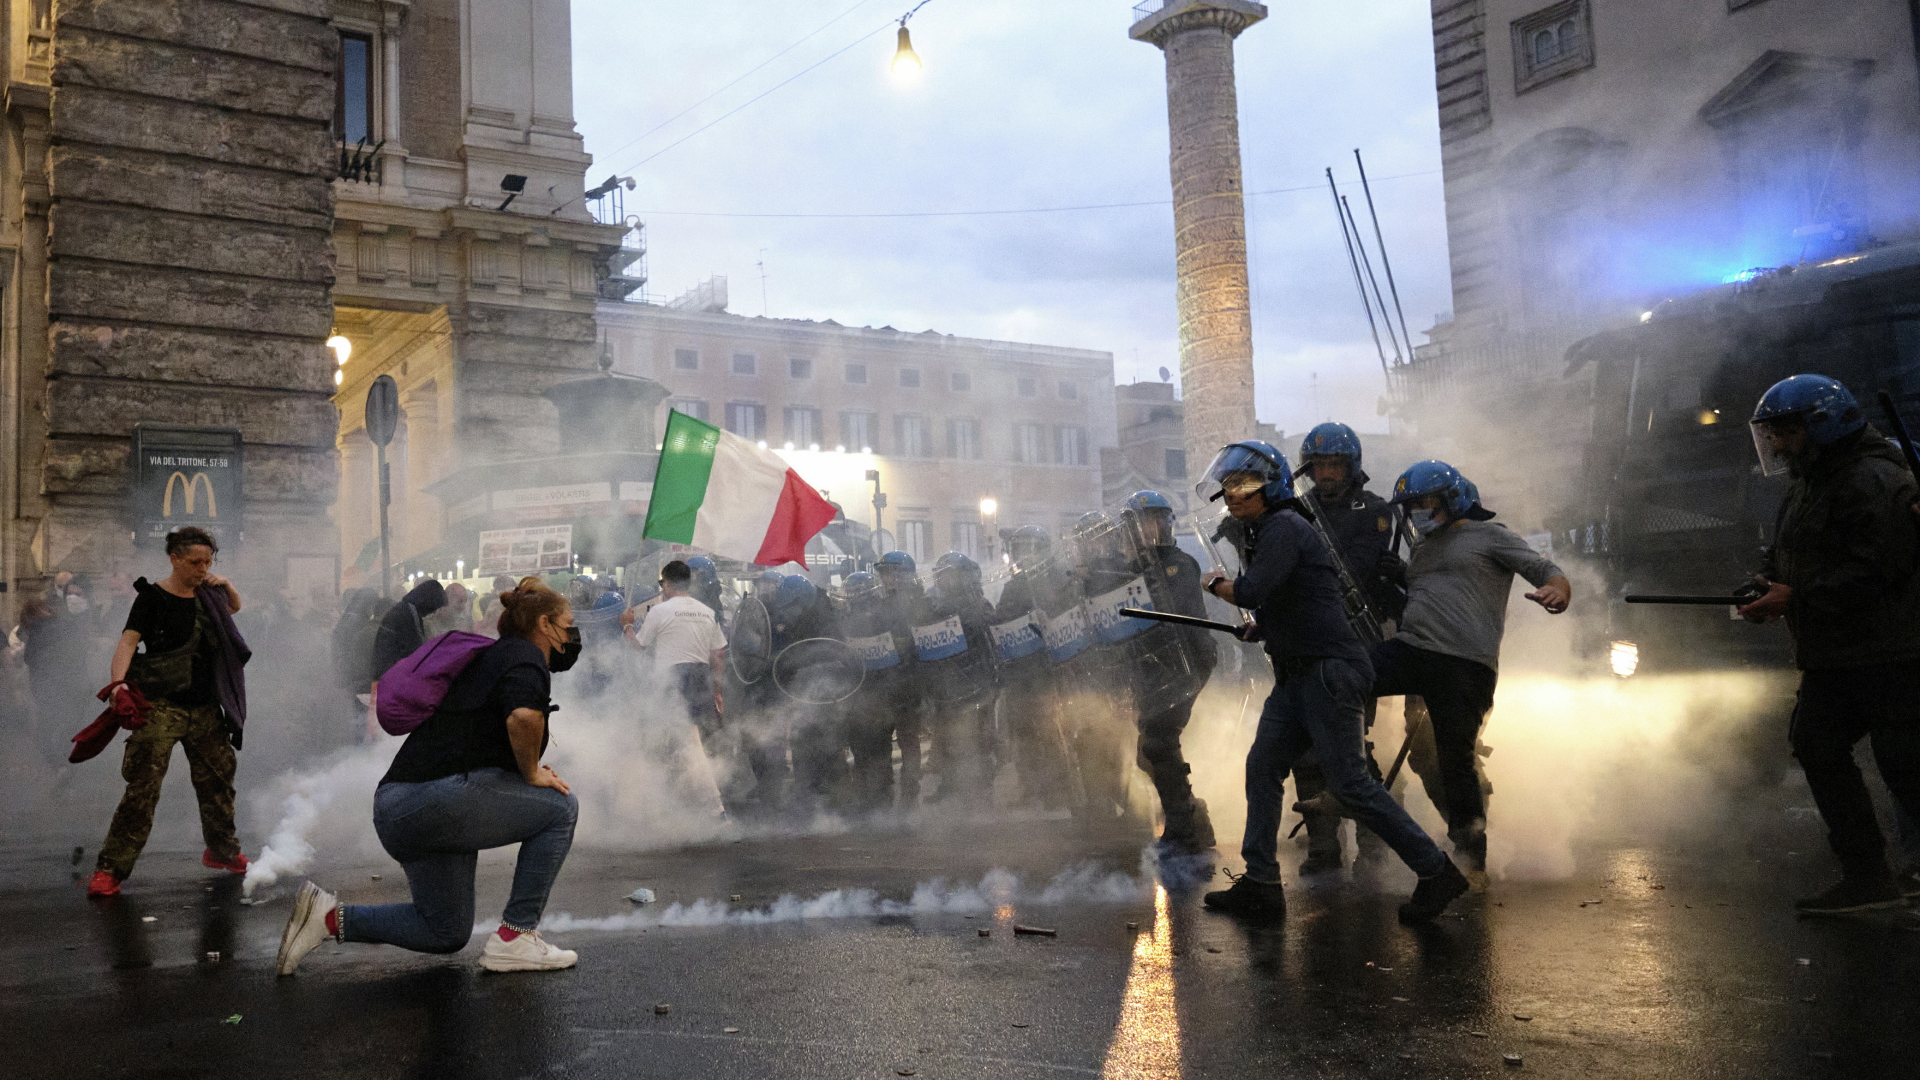 Gewaltsame Auseinandersetzungen zwischen Polizisten und Demonstranten in Rom. | dpa